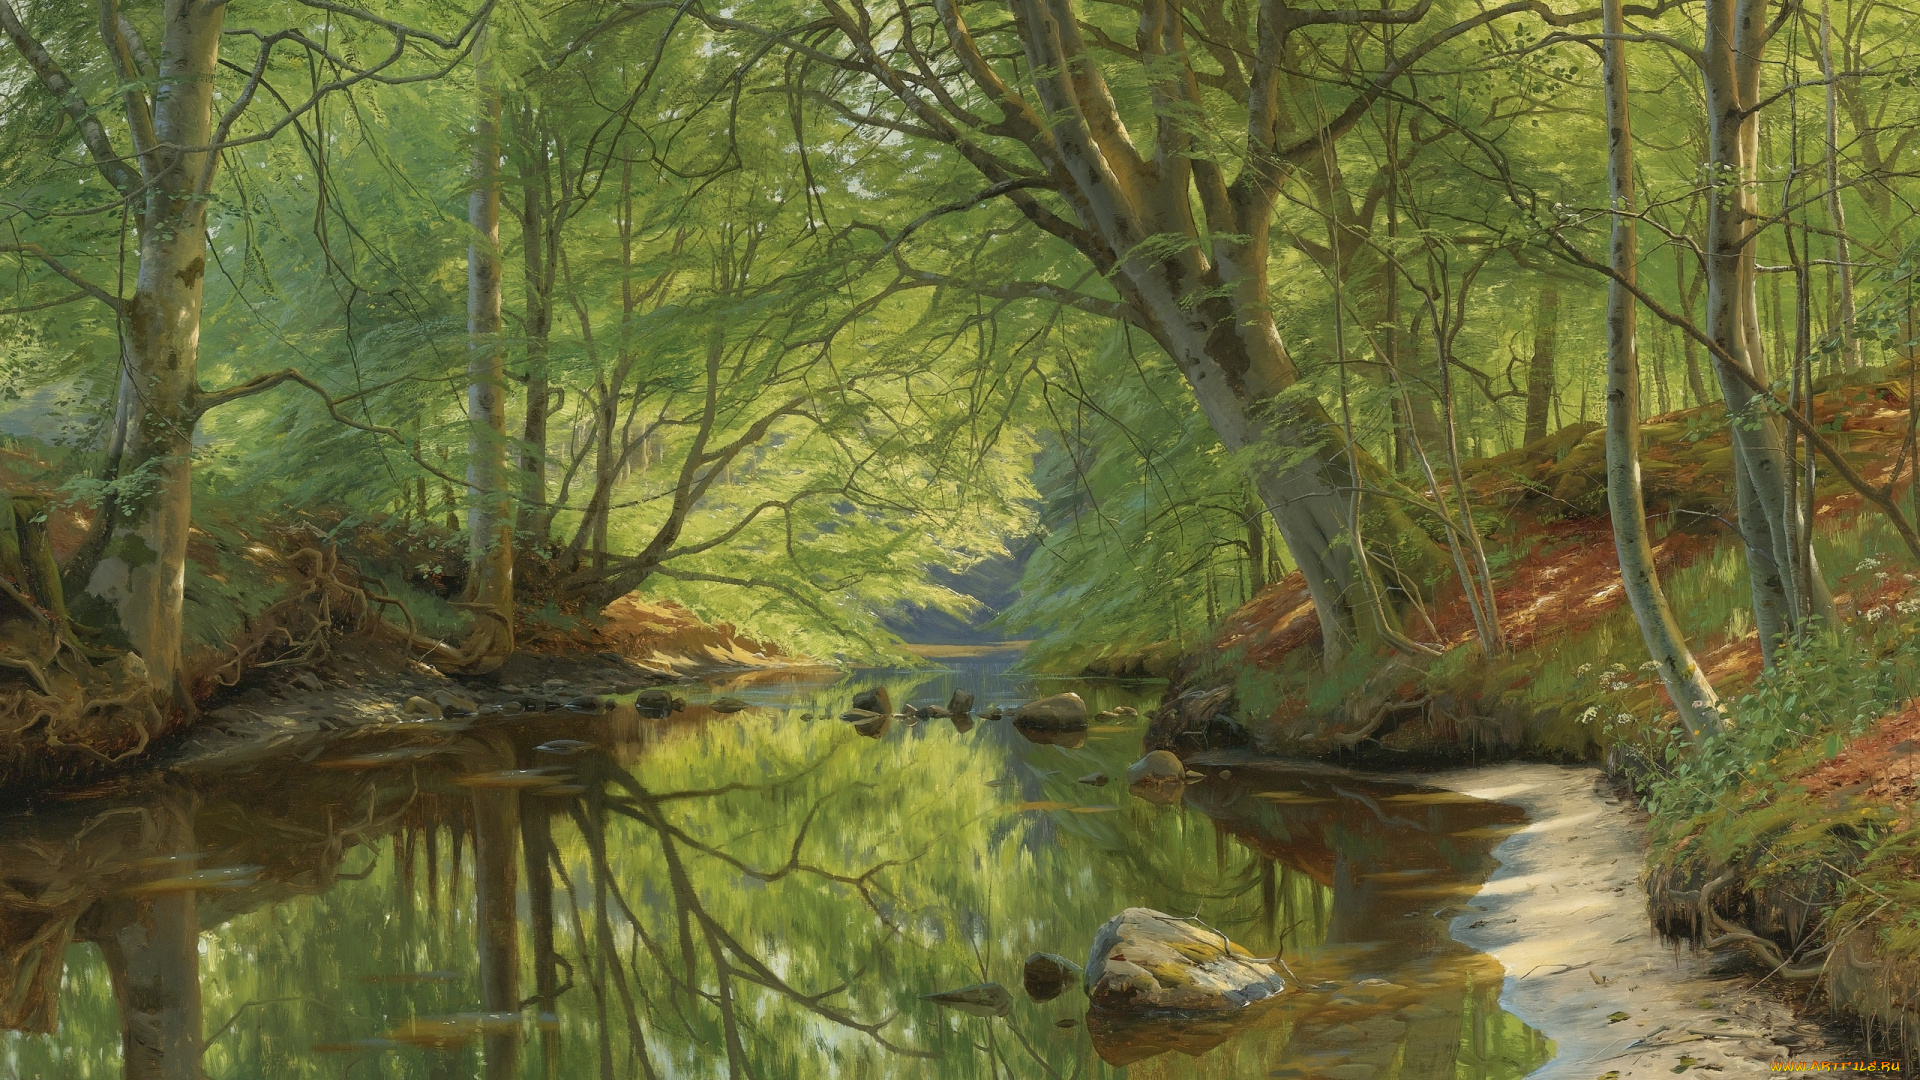 рисованное, живопись, 1896, peder, mоrk, mоnsted, лесной, ручей, danish, realist, painter, forest, stream, датский, живописец, петер, мёрк, мёнстед